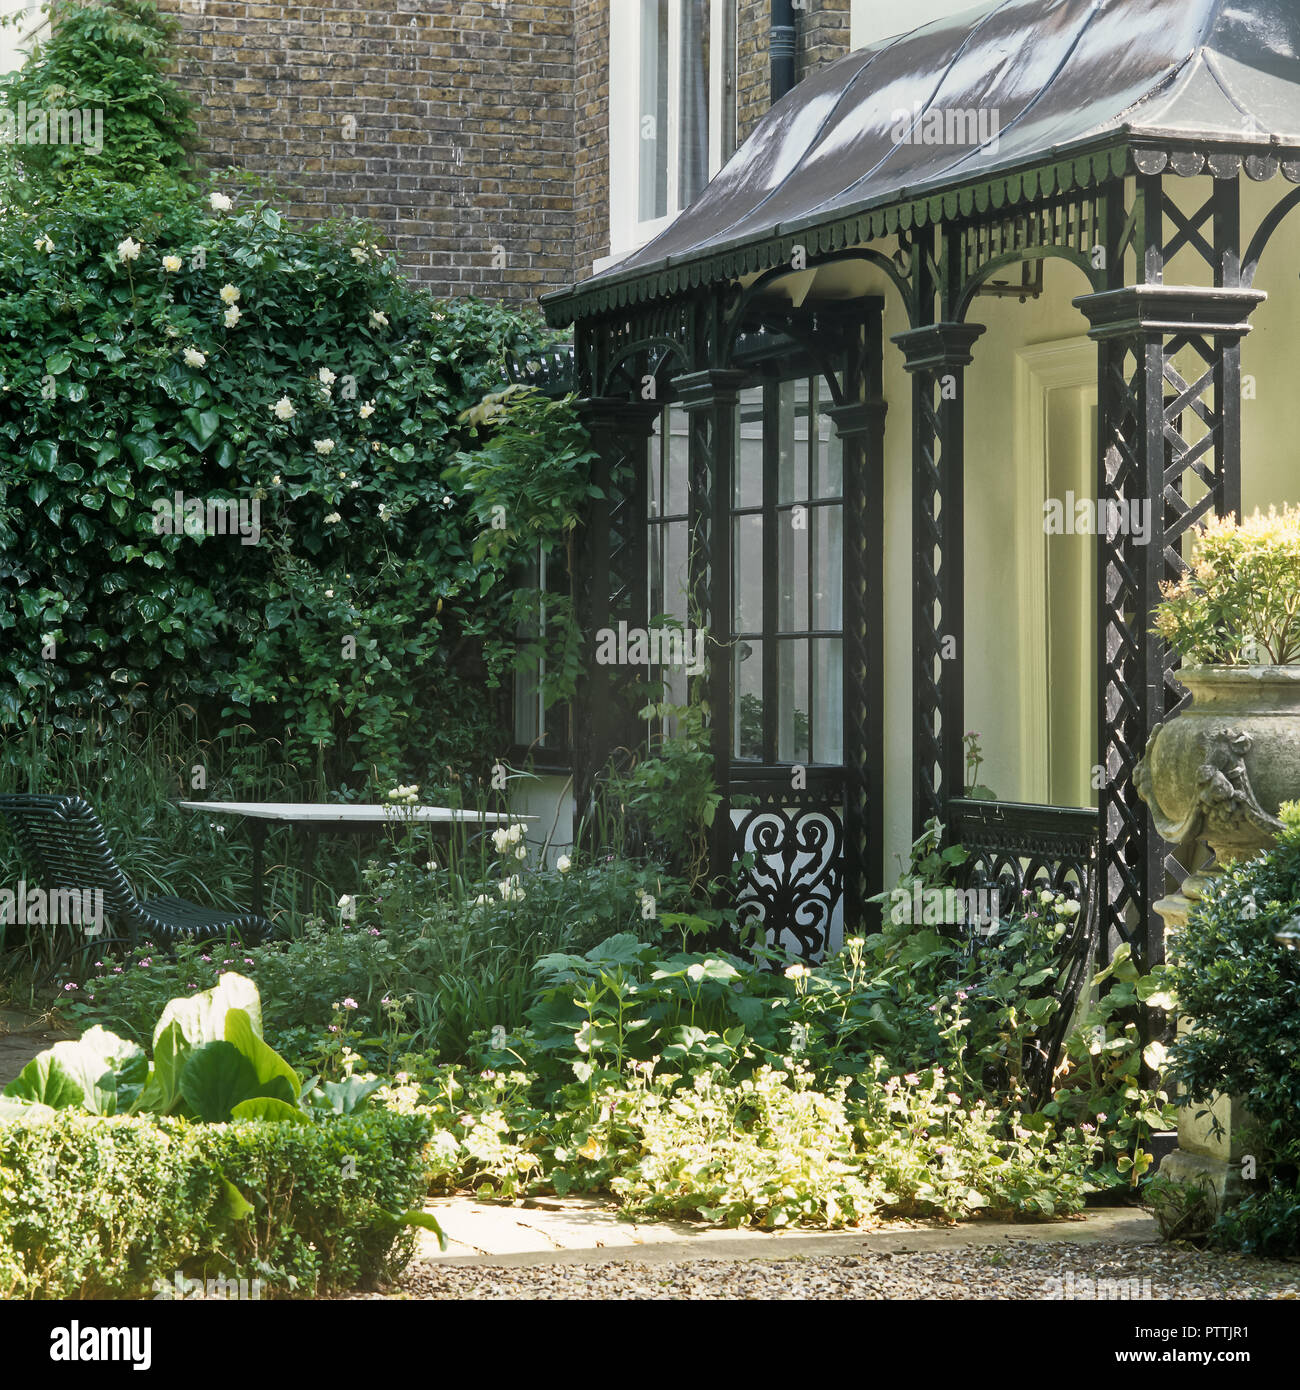 Victorian porch and garden of Kensington home Stock Photo